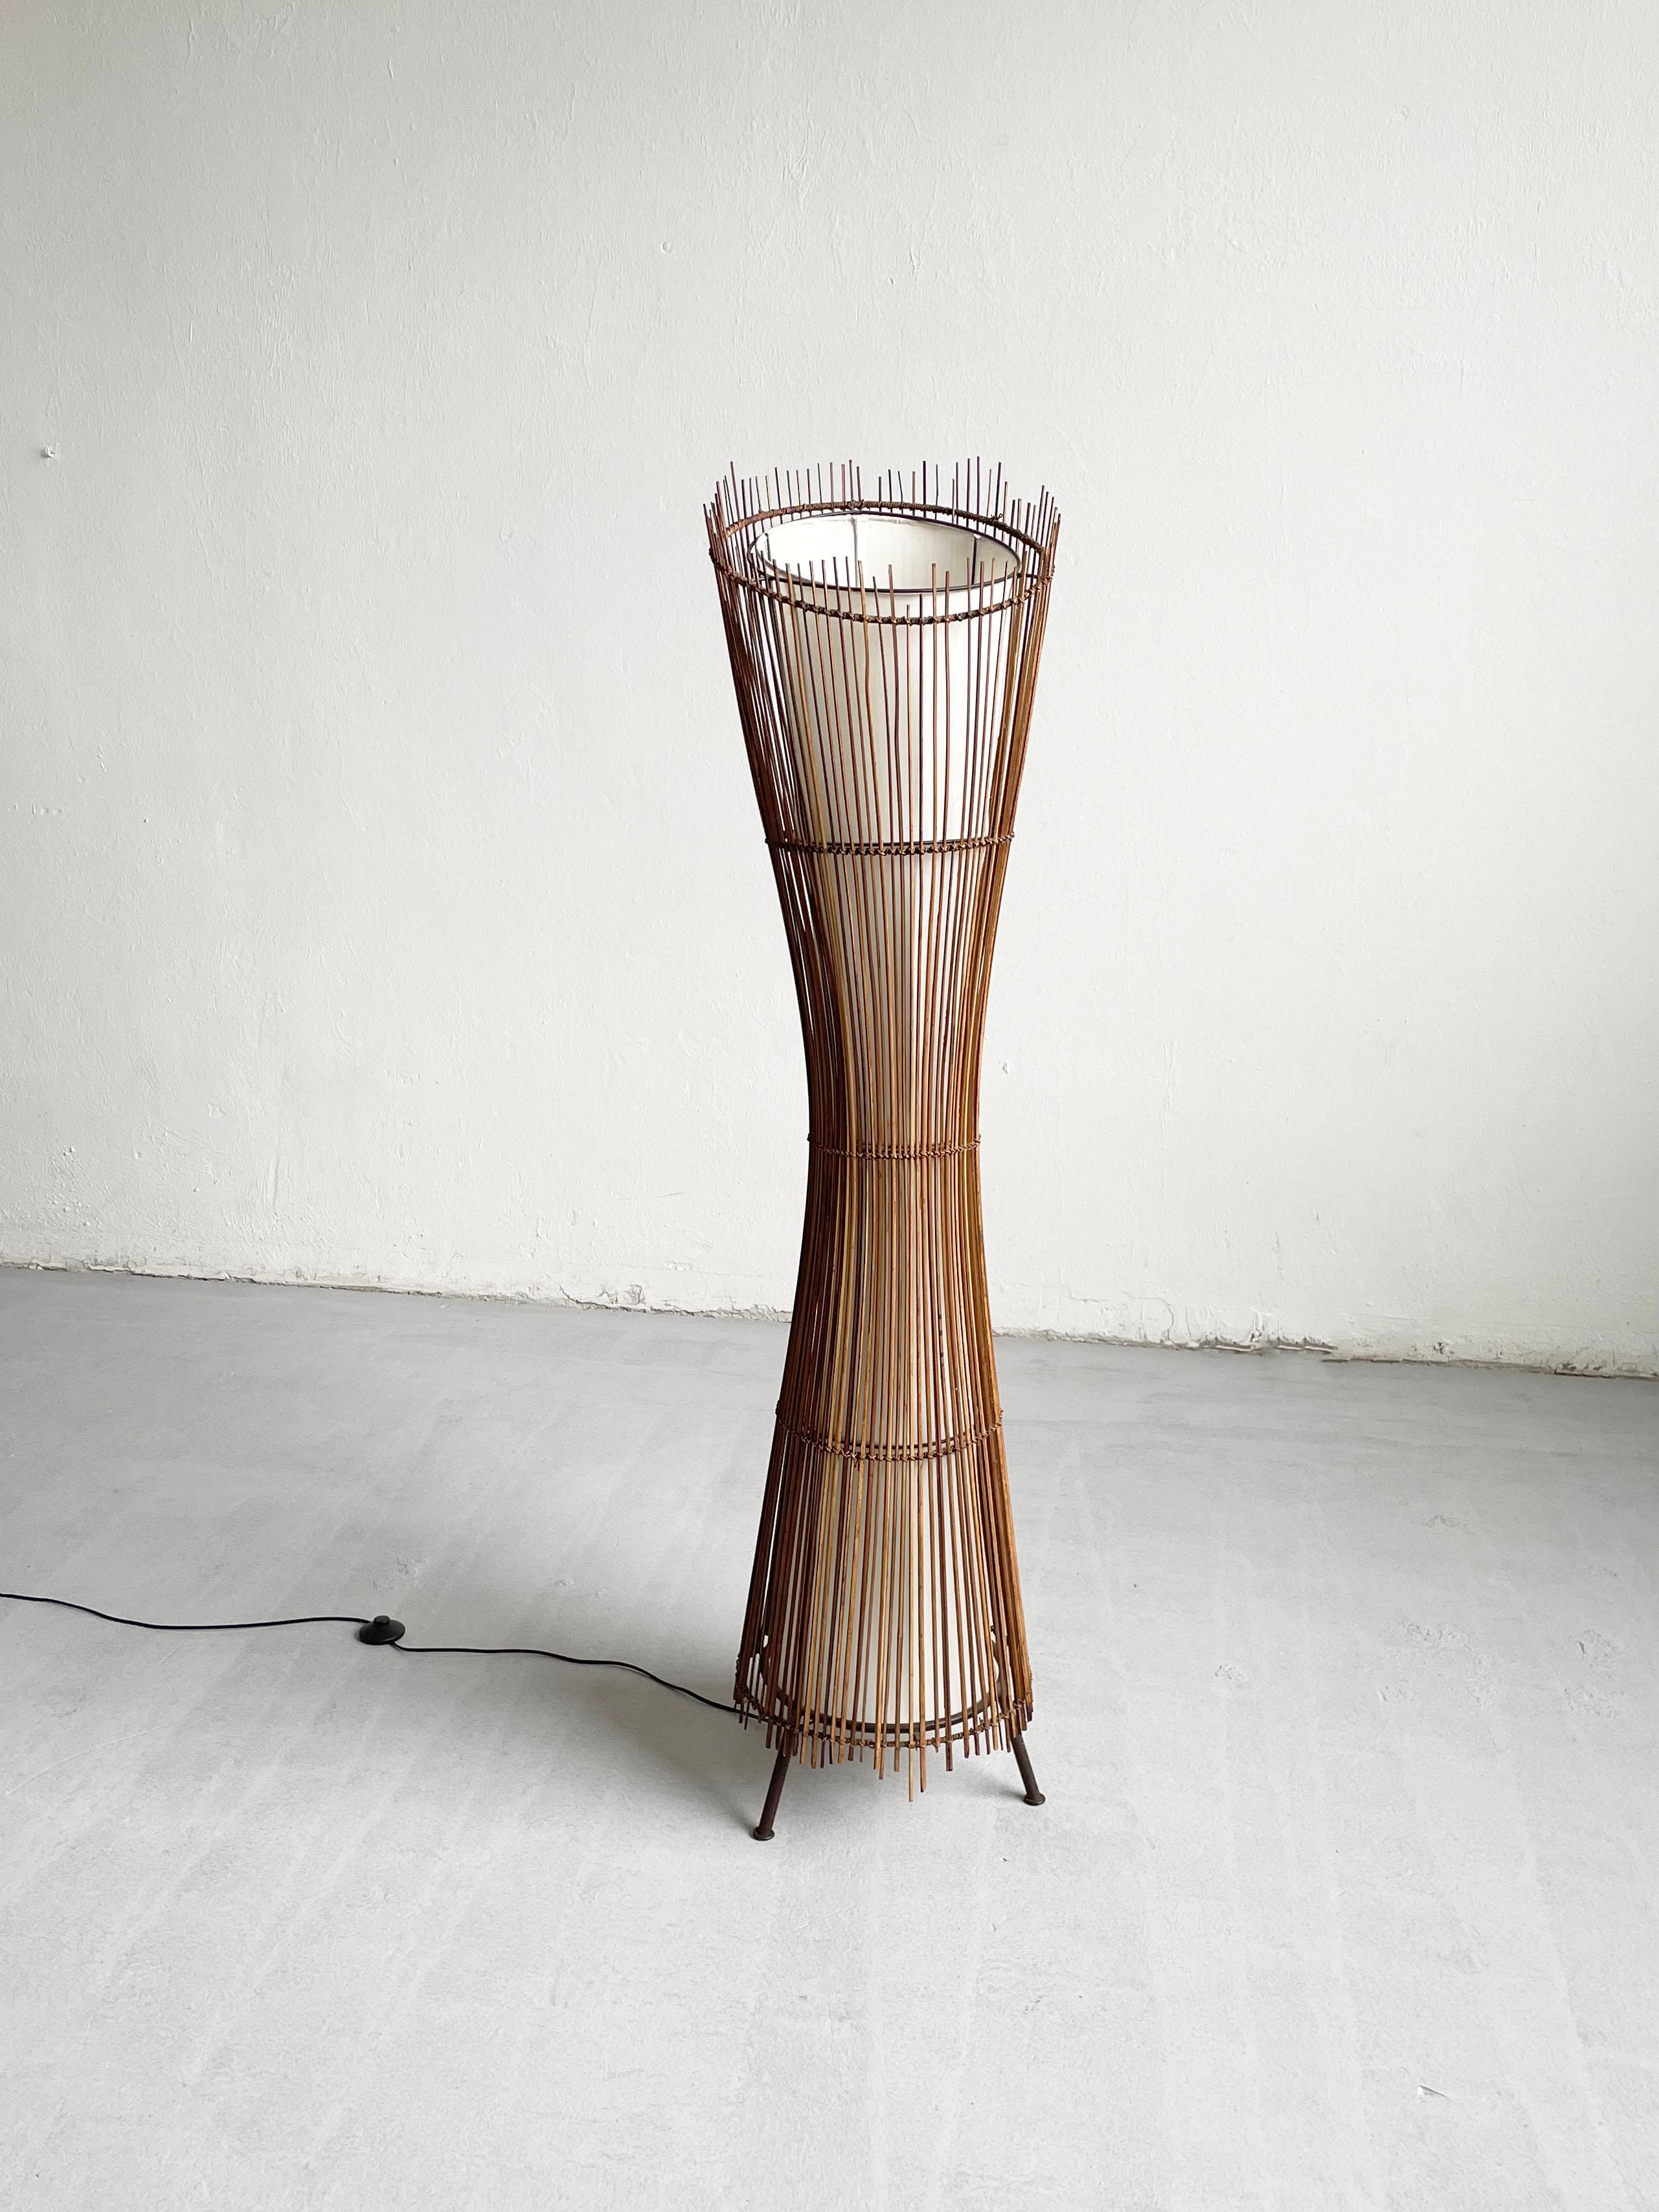 Ce lampadaire sculptural a été fabriqué en France dans les années 1980. 
Il présente une belle forme organique faite d'une armature en fer et de bambou. L'abat-jour intérieur est en toile blanche 

La lampe est équipée de trois douilles européennes